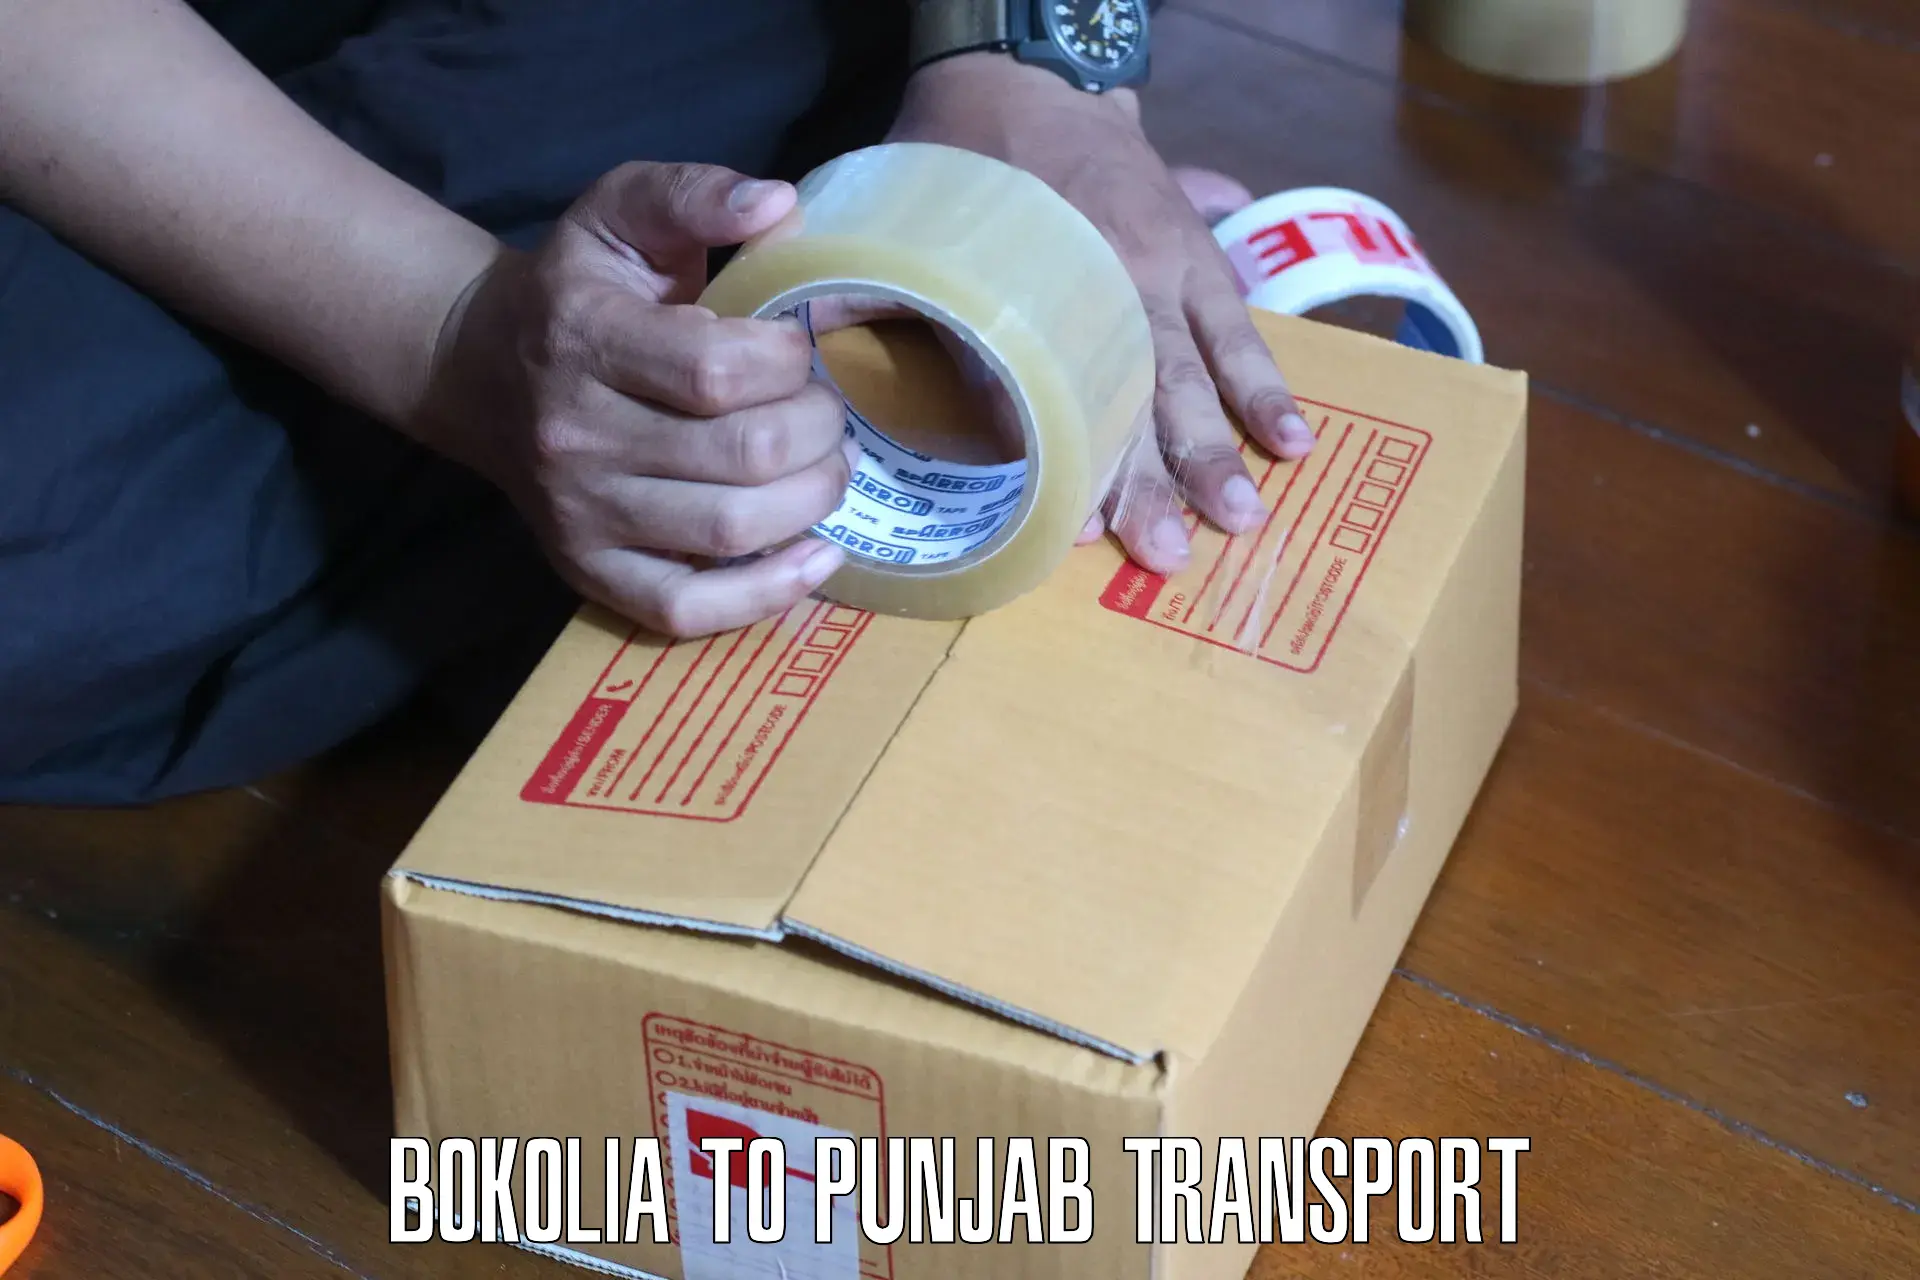 Cargo transportation services Bokolia to Rupnagar